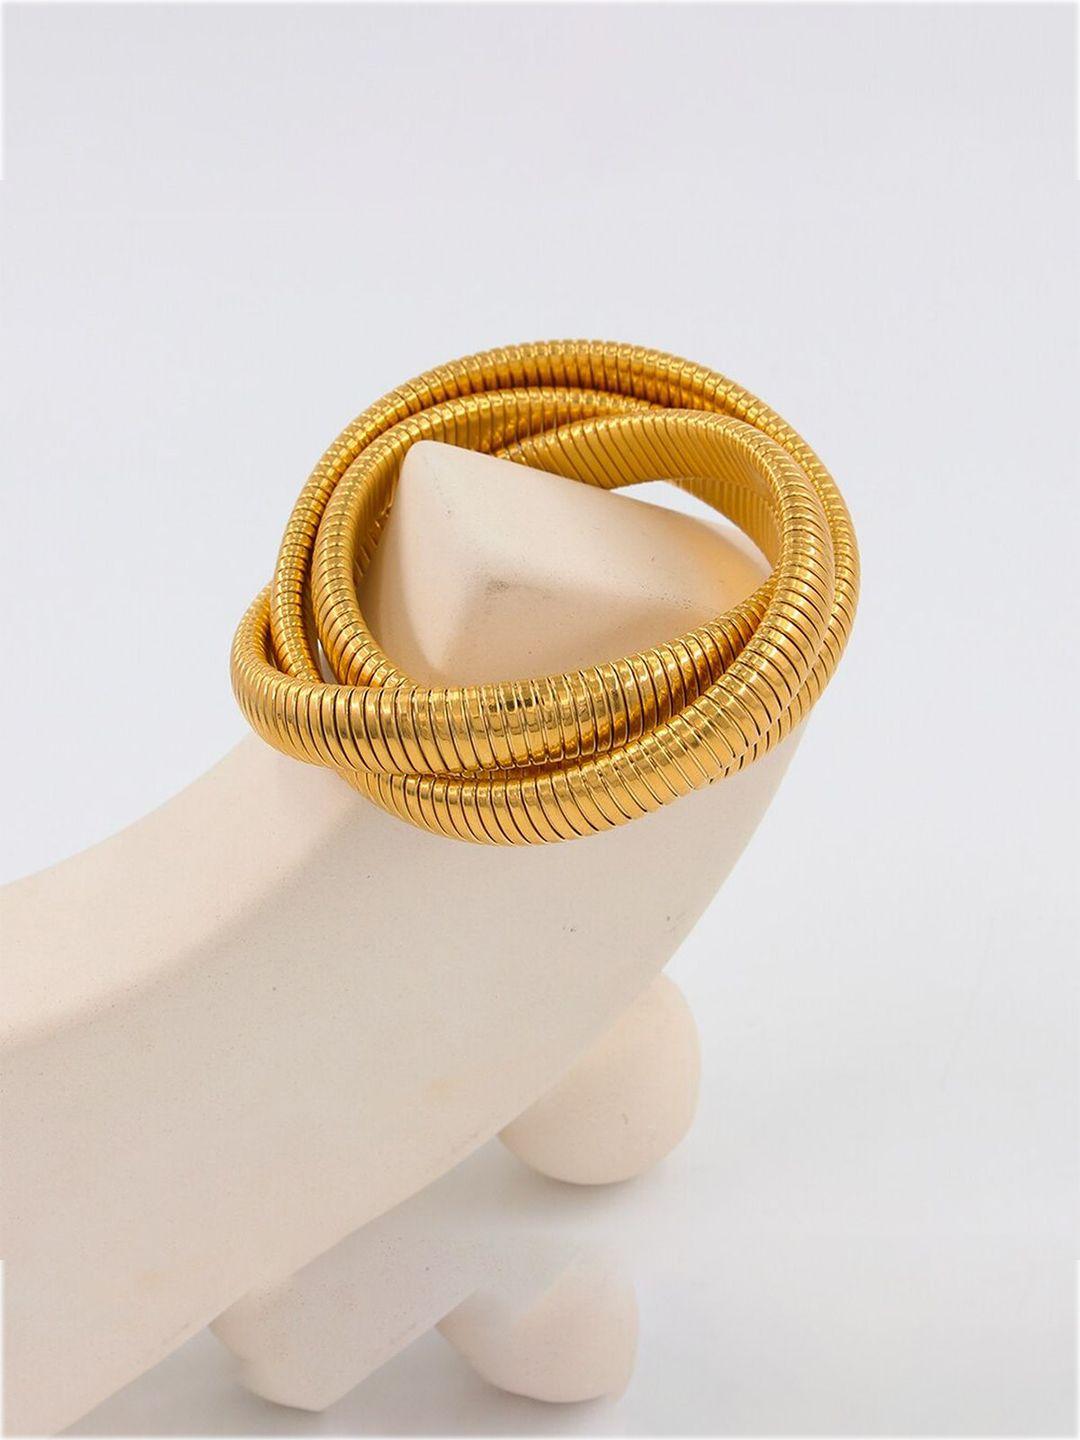 zivom 18k gold-plated wraparound bracelet